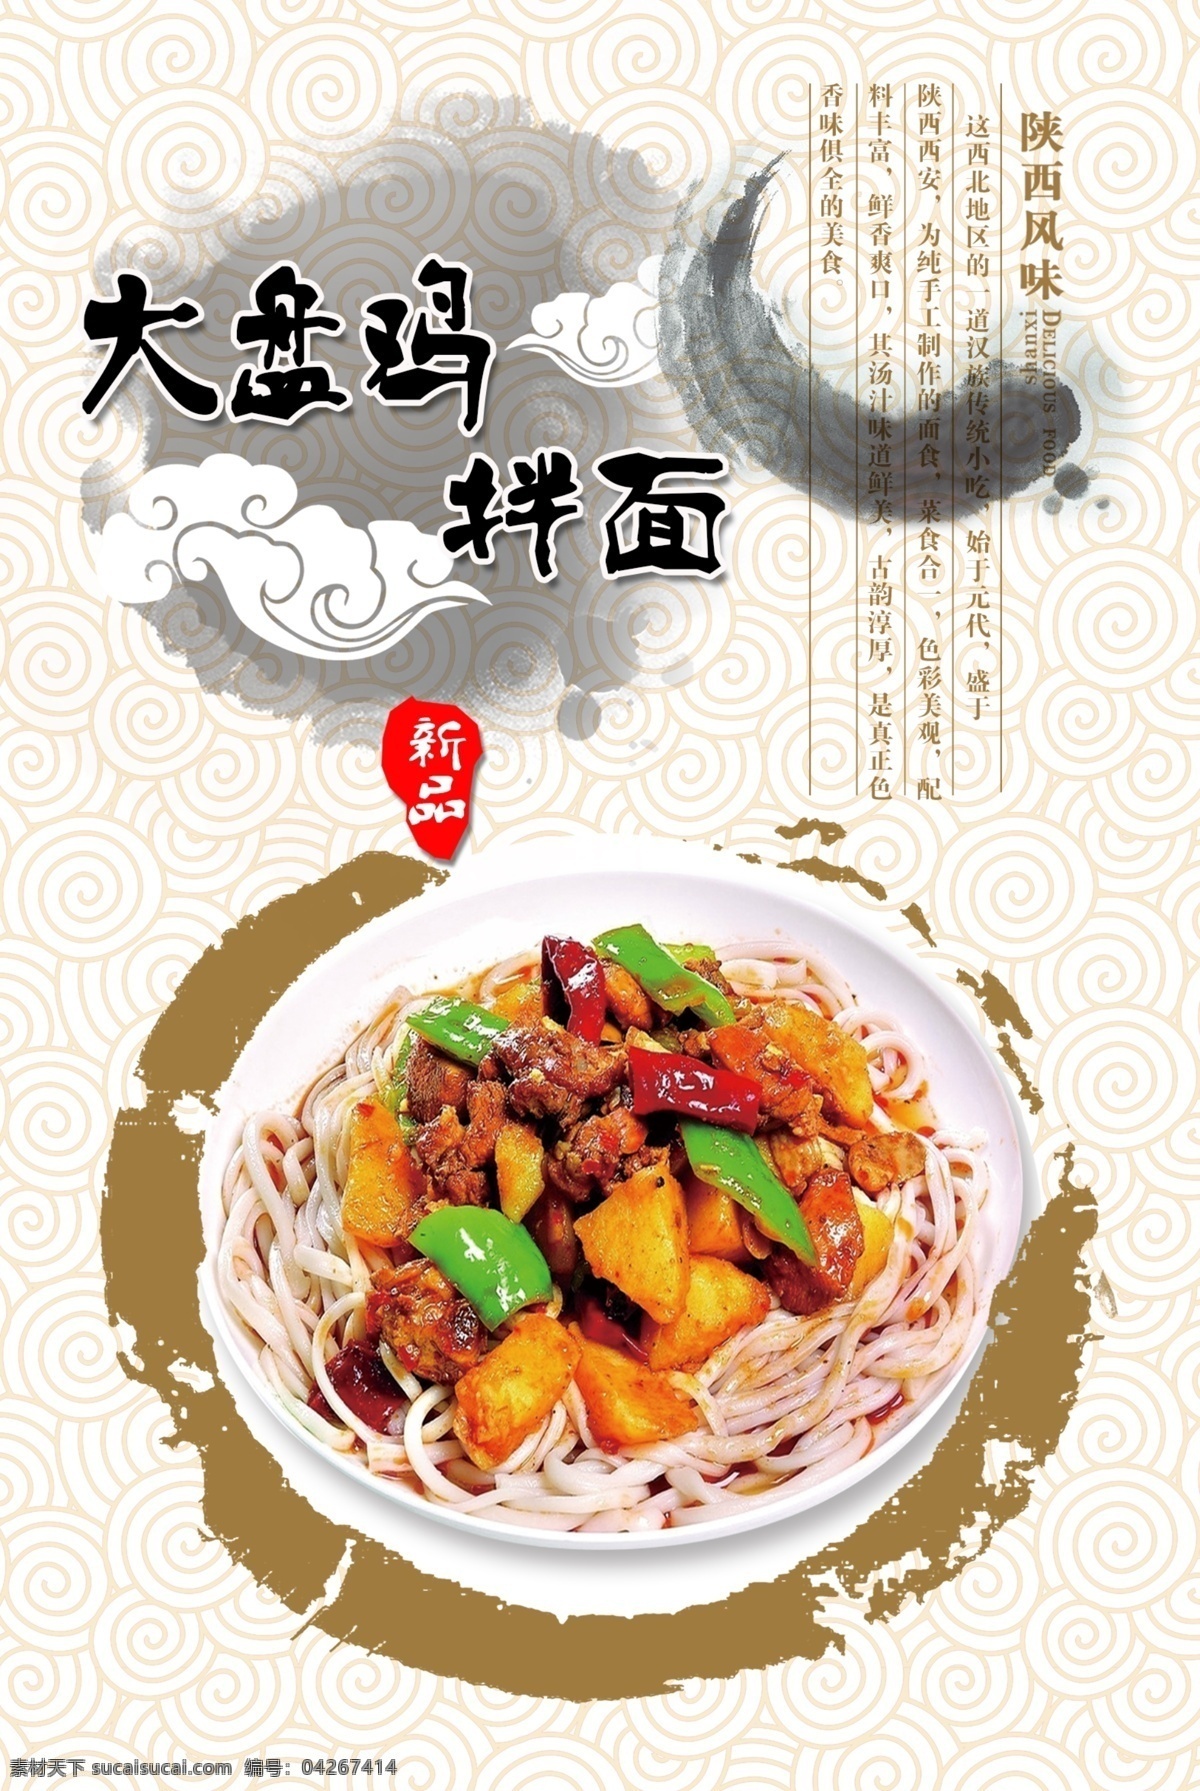 大盘鸡 拌 海报 厘米 写真 写真广告 菜品海报 西北菜